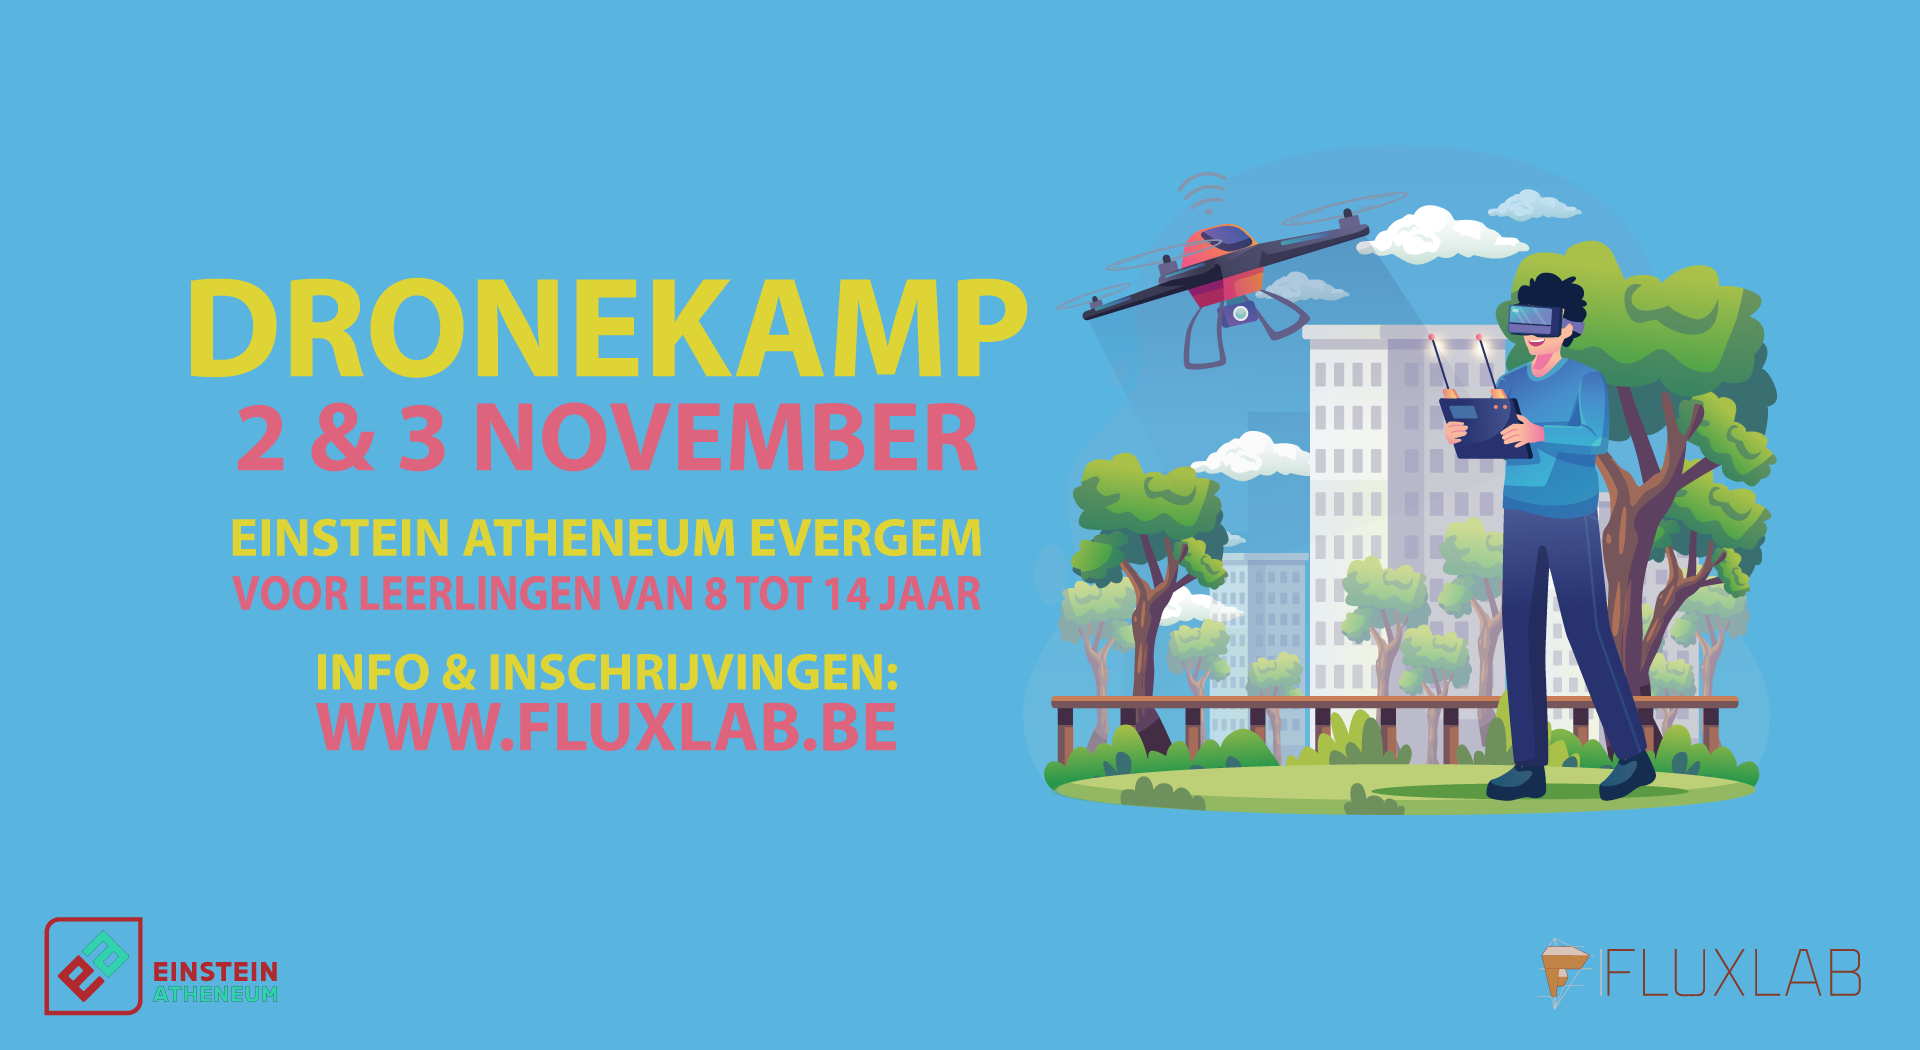 Drone-Kamp-Evergem-Einstein